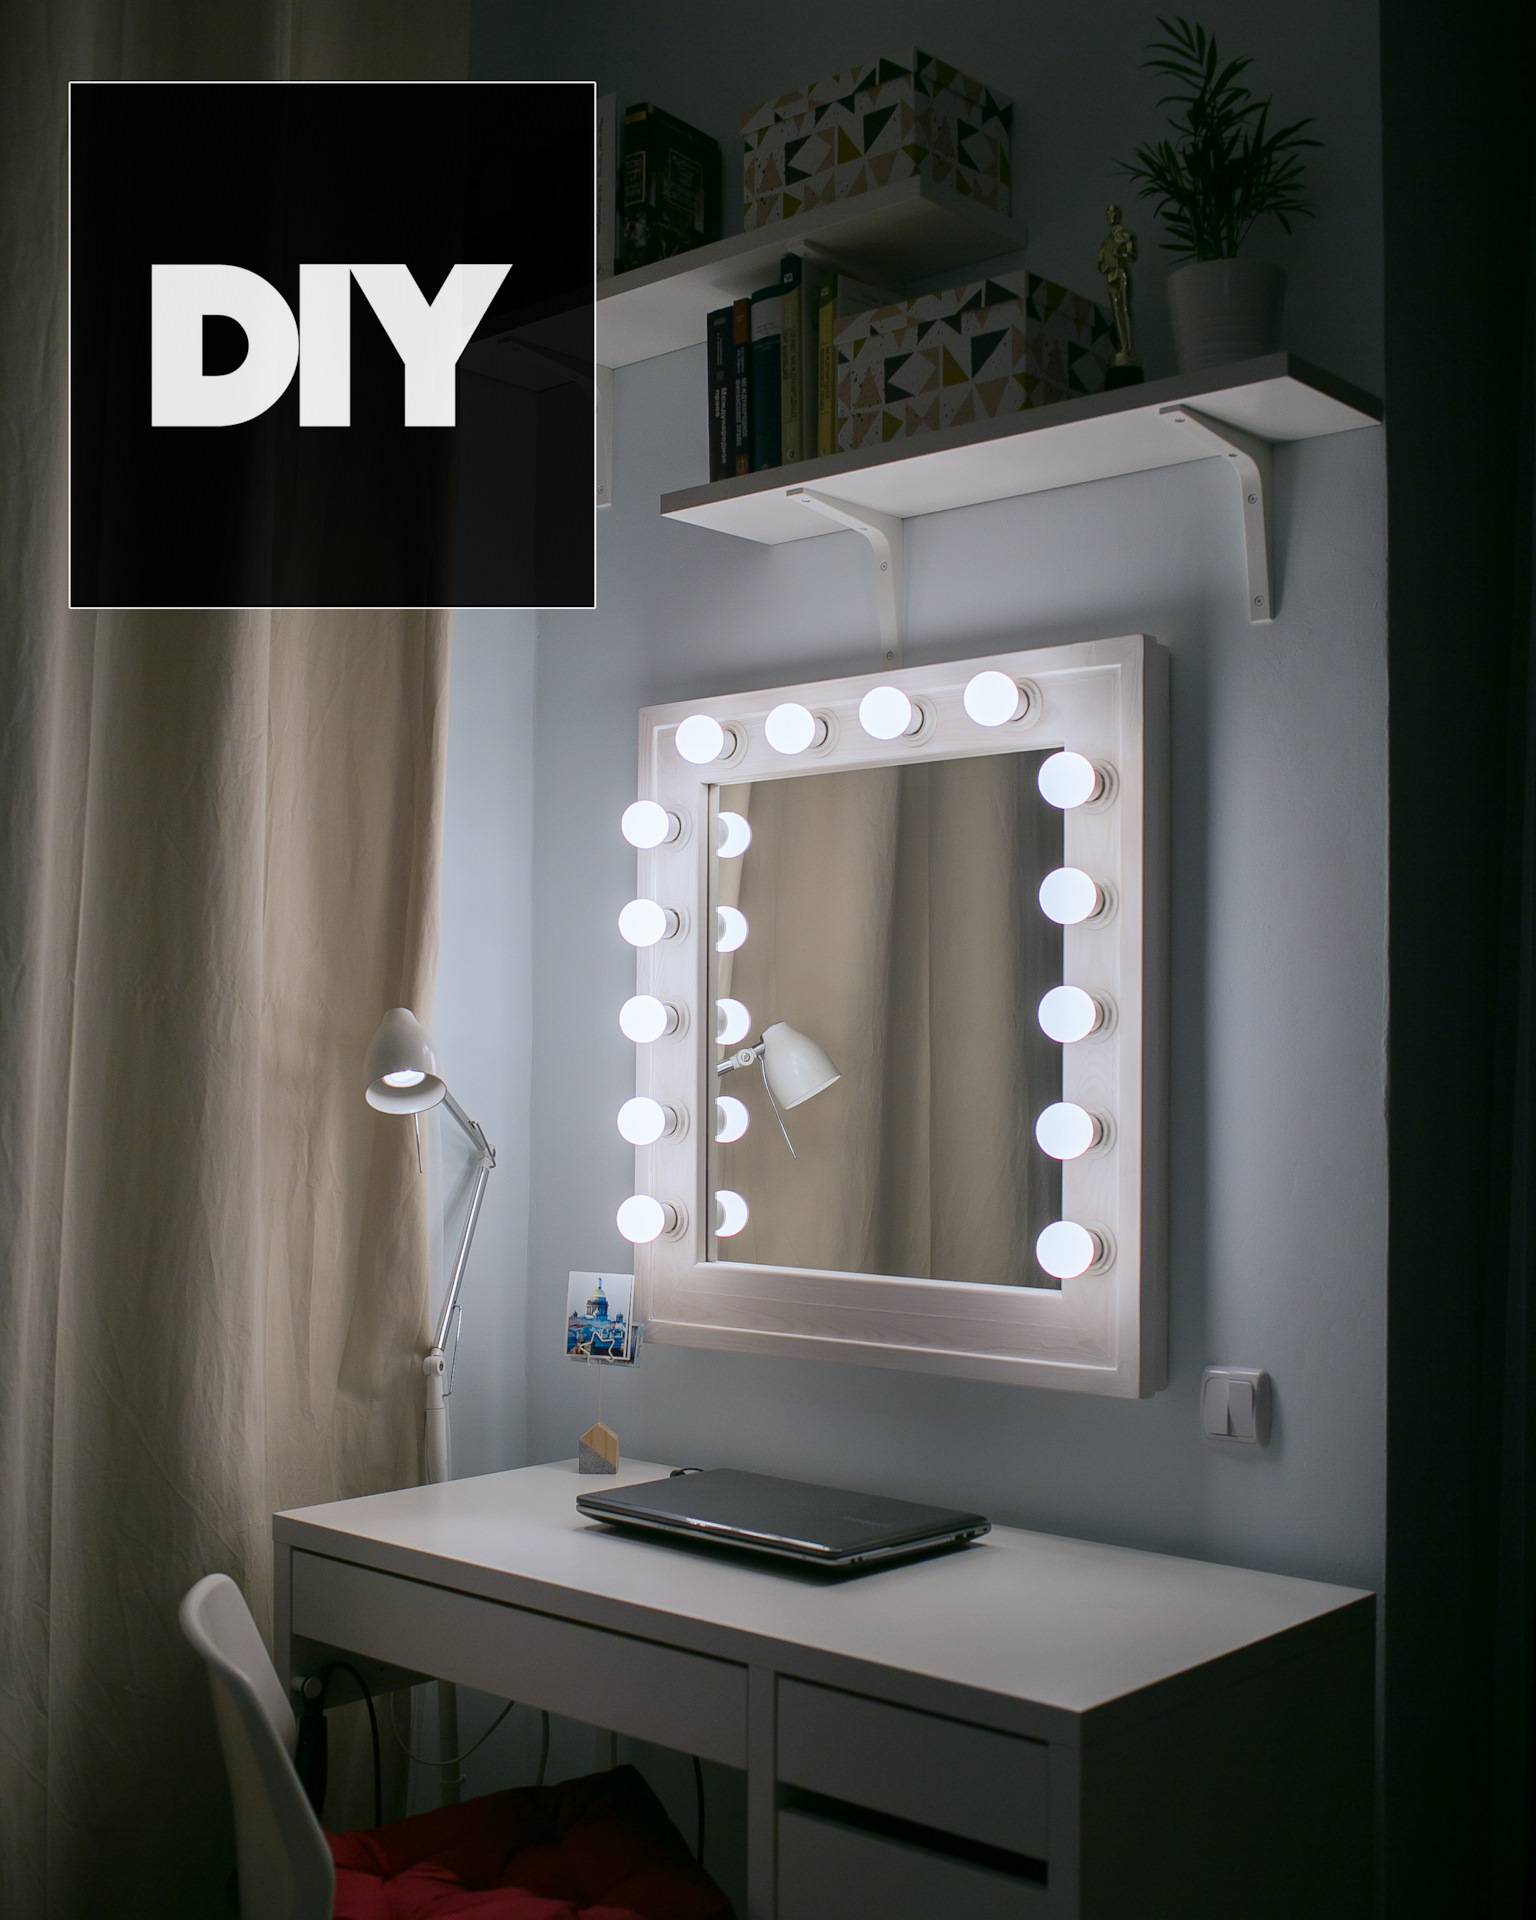 Зеркало с подсветкой своими руками: как сделать стильной и красивое гримерное зеркало